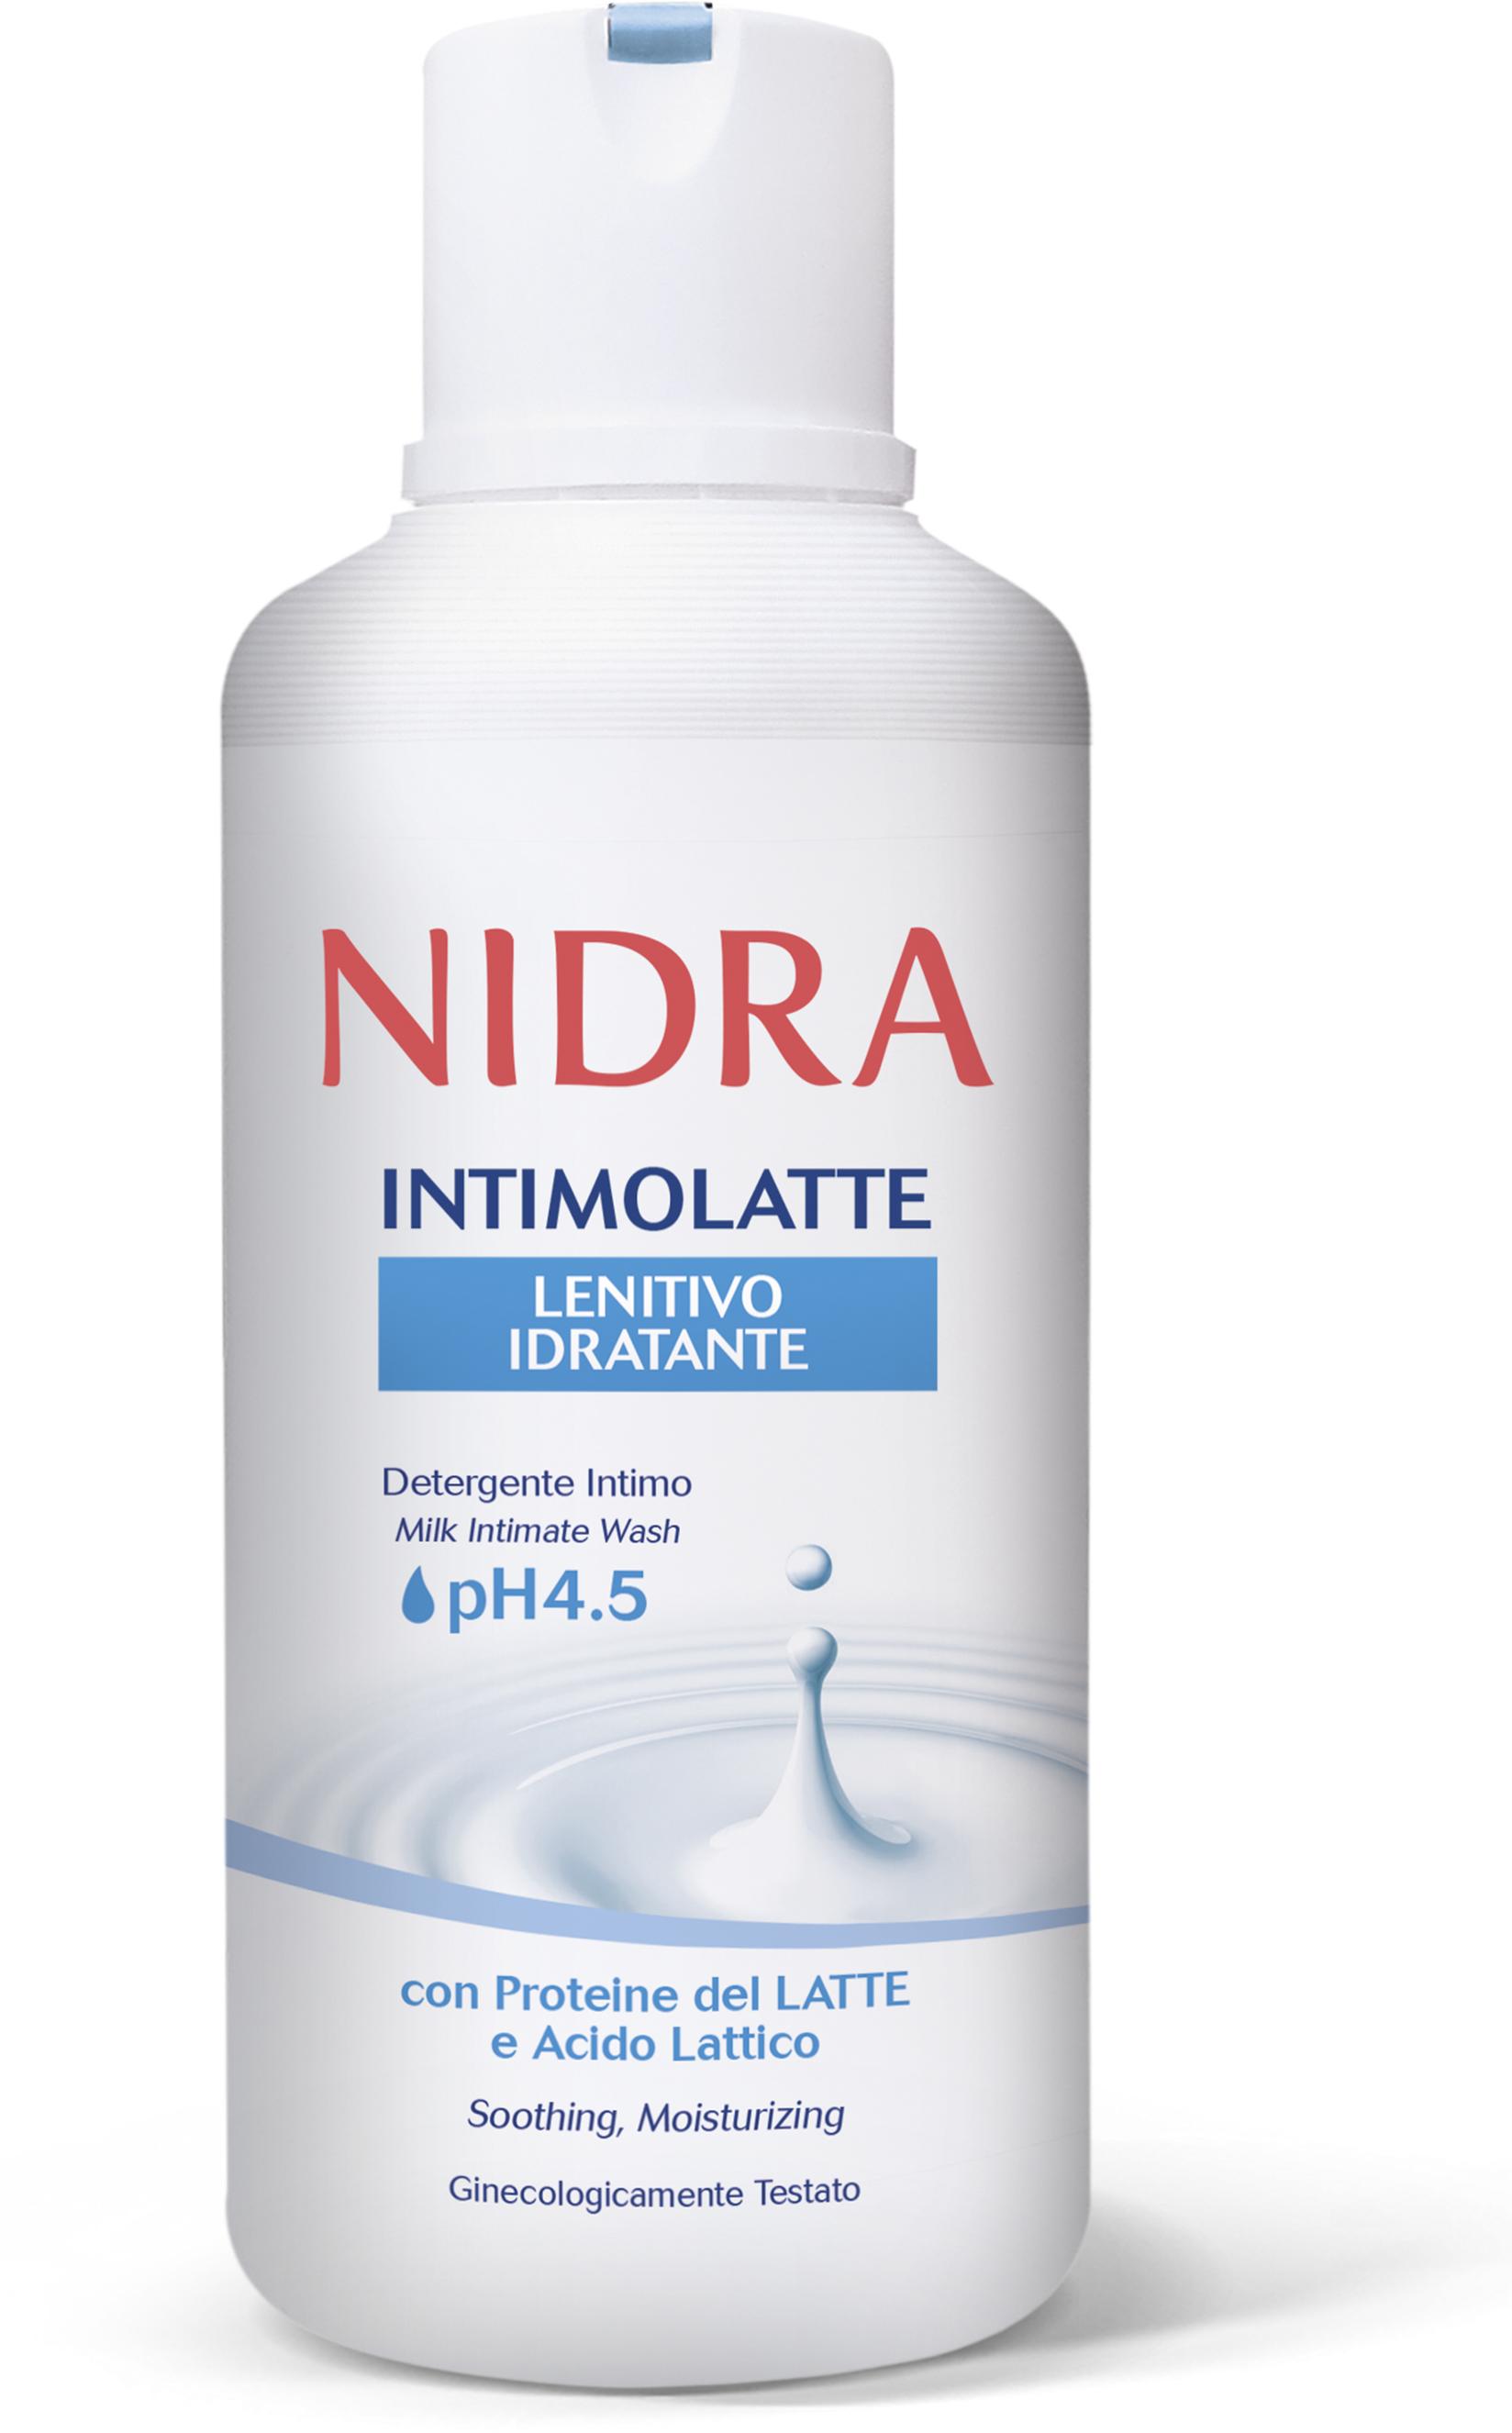 Selected image for NIDRA Intimni sapun sa proetinima mleka, 500ml